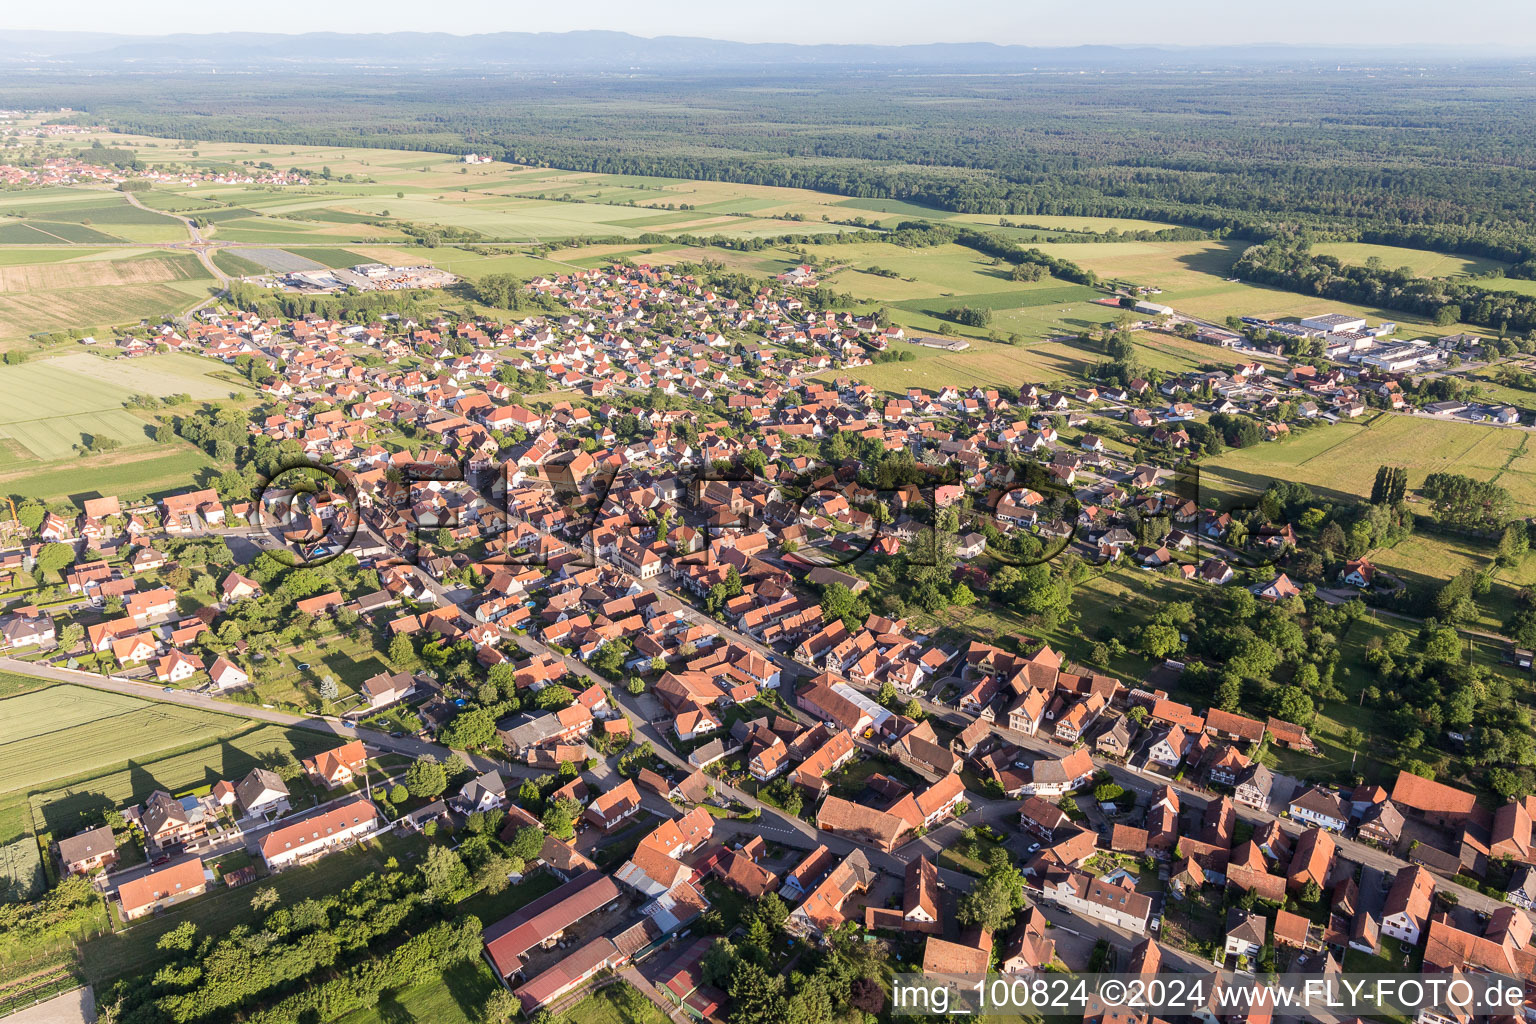 Luftbild von Dorf - Ansicht am Rande von landwirtschaftlichen Feldern und Nutzflächen in Surbourg in Grand Est im Bundesland Bas-Rhin, Frankreich